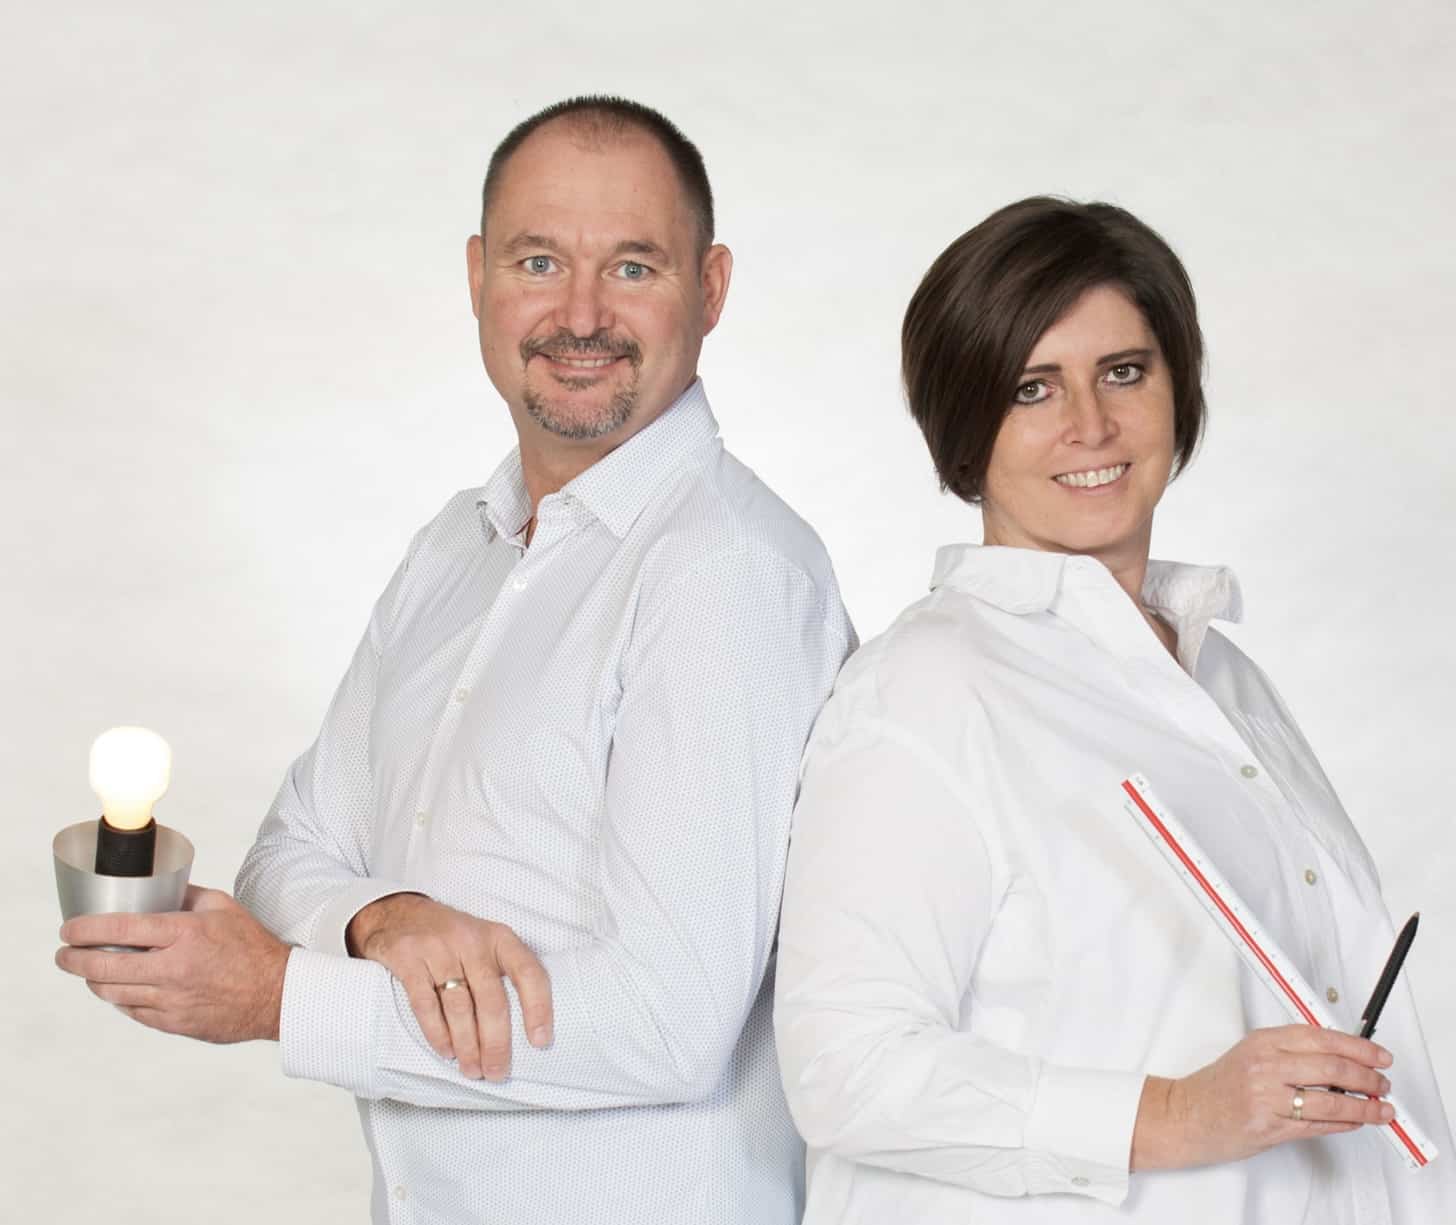 Karl und Manuella Straßberger, Inhaber und Geschäftsführer von STEIROLA GmbH